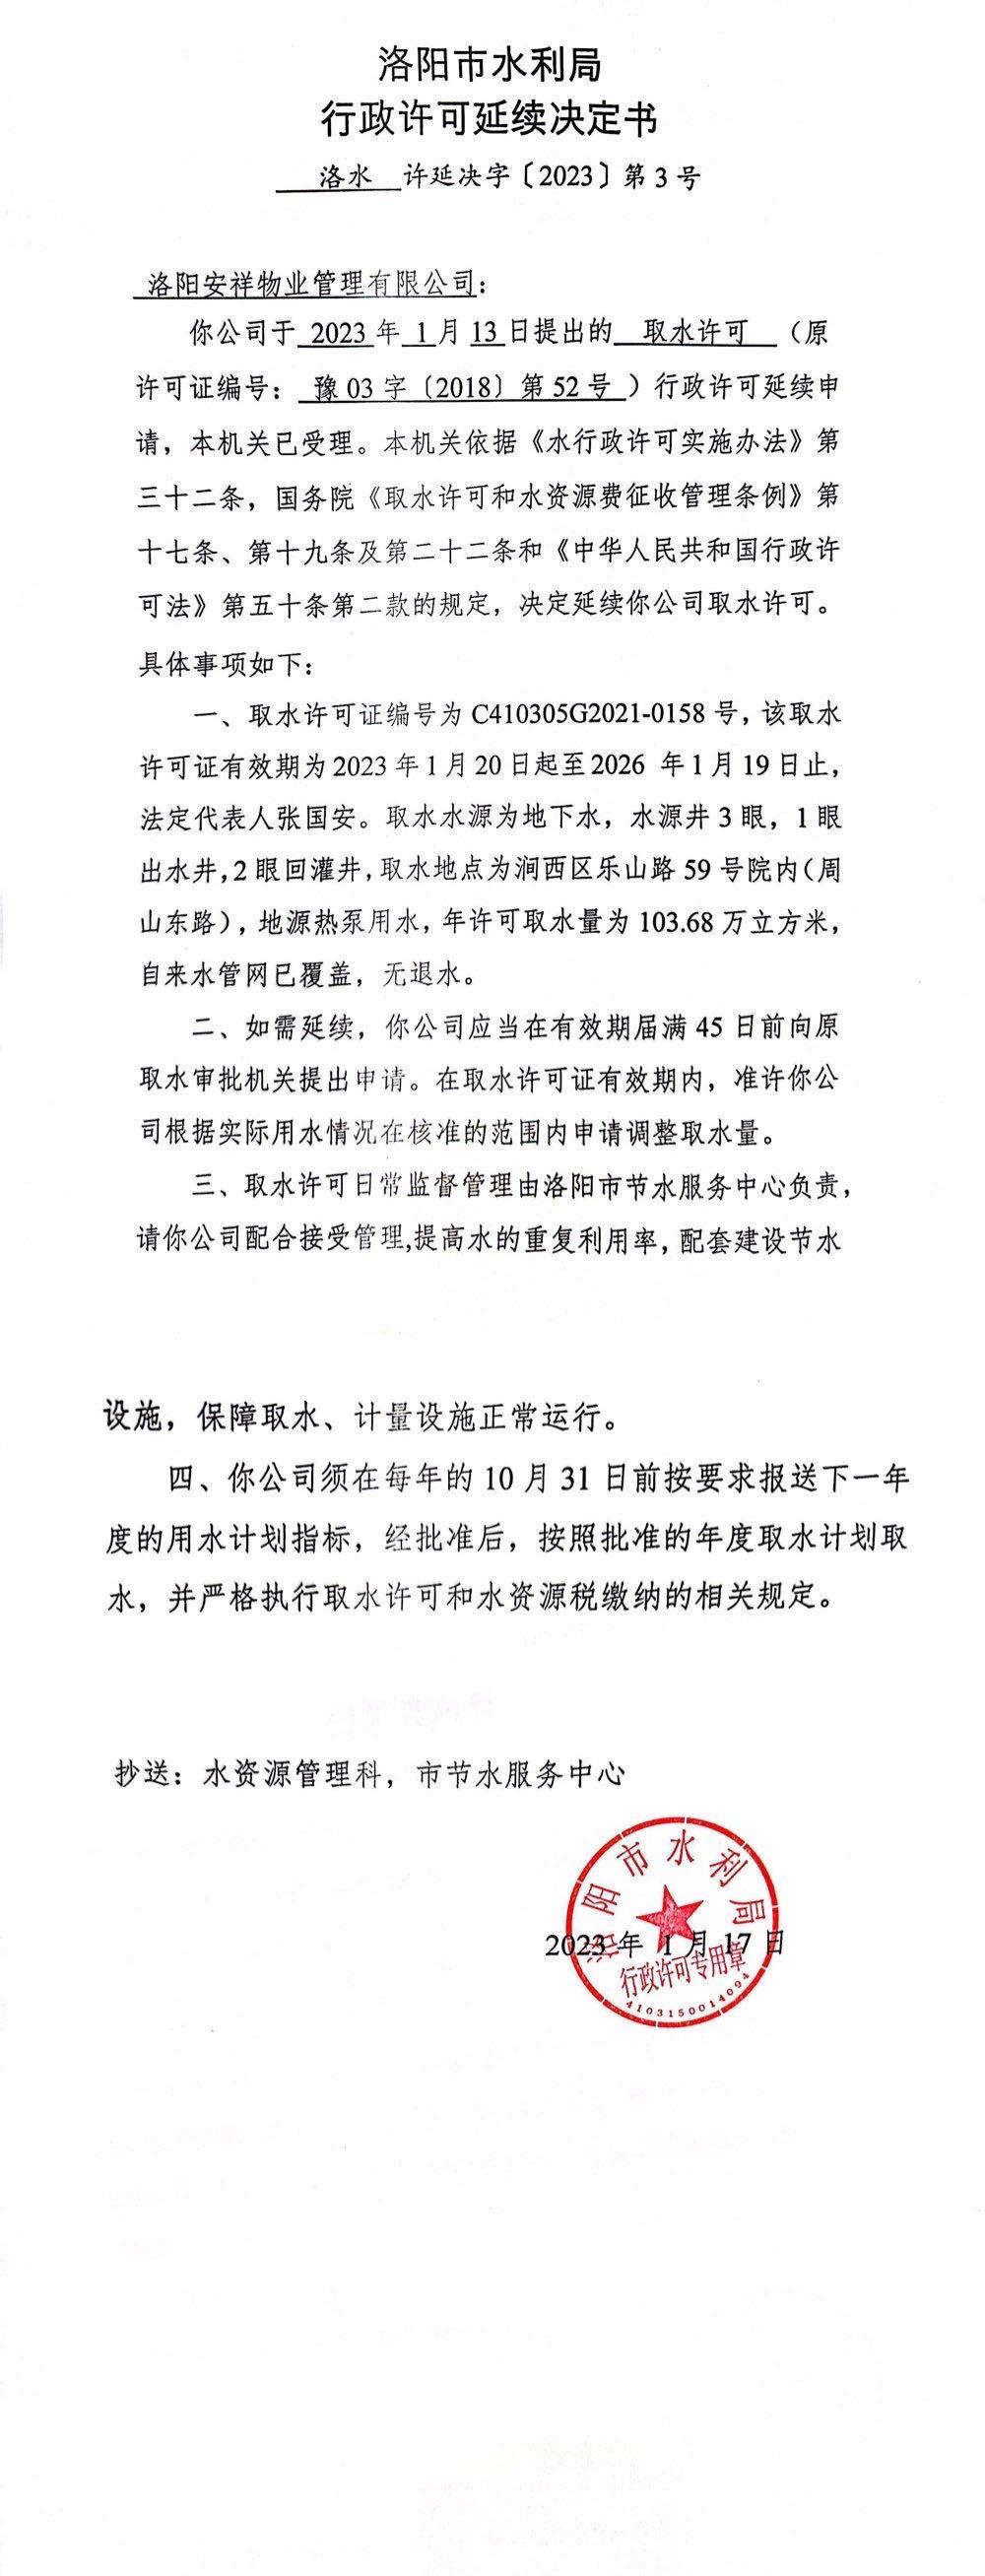 洛水许延决字（2023）3号 关于洛阳安祥物业管理有限公司取水许可延续的公示(图2)